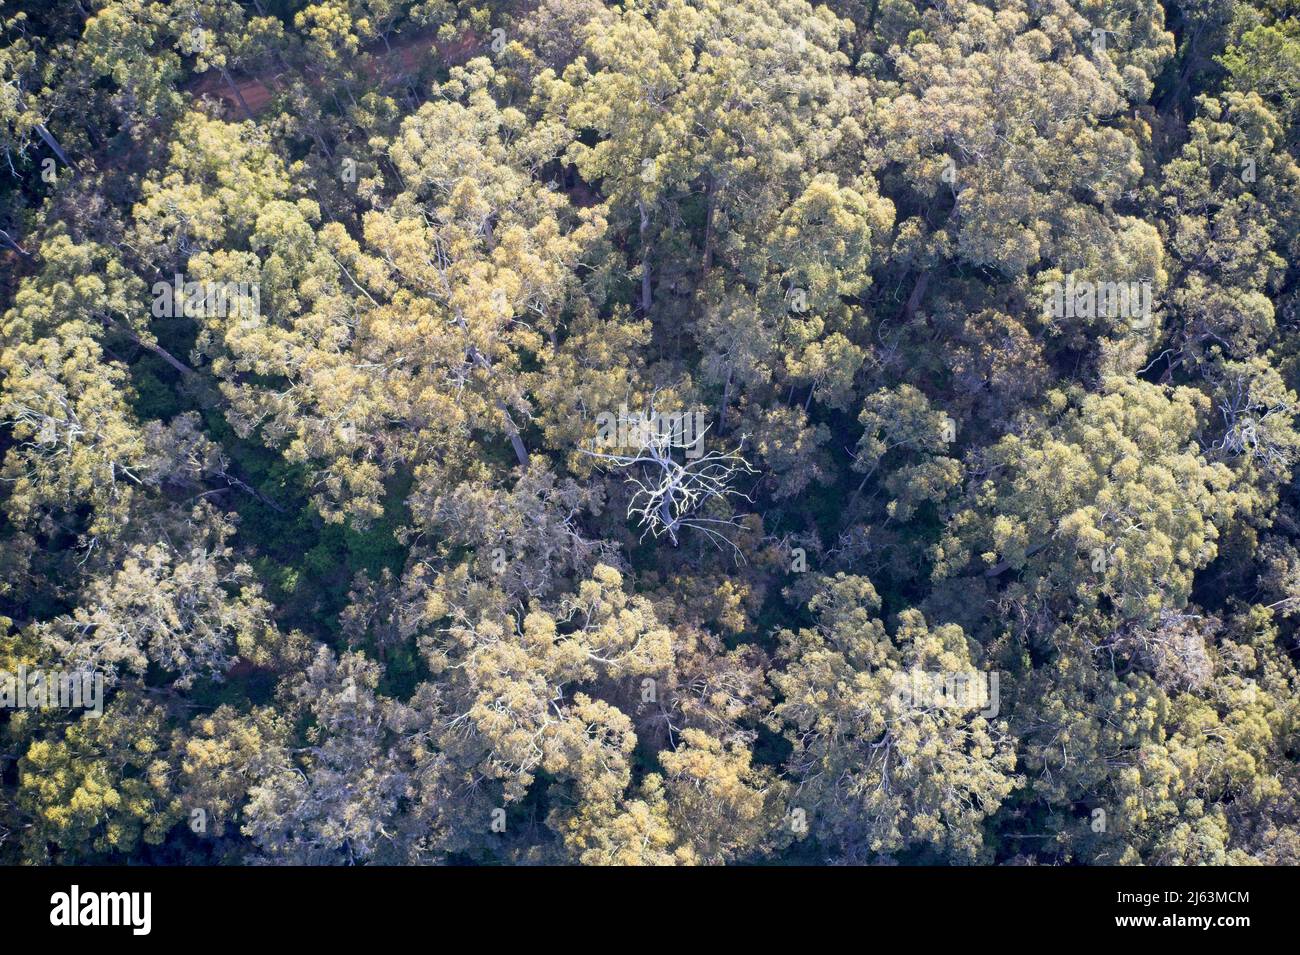 Champ de vision de drone de la forêt d'en haut formant des modèles dans la nature avec arbre mort au centre en Australie occidentale. Banque D'Images